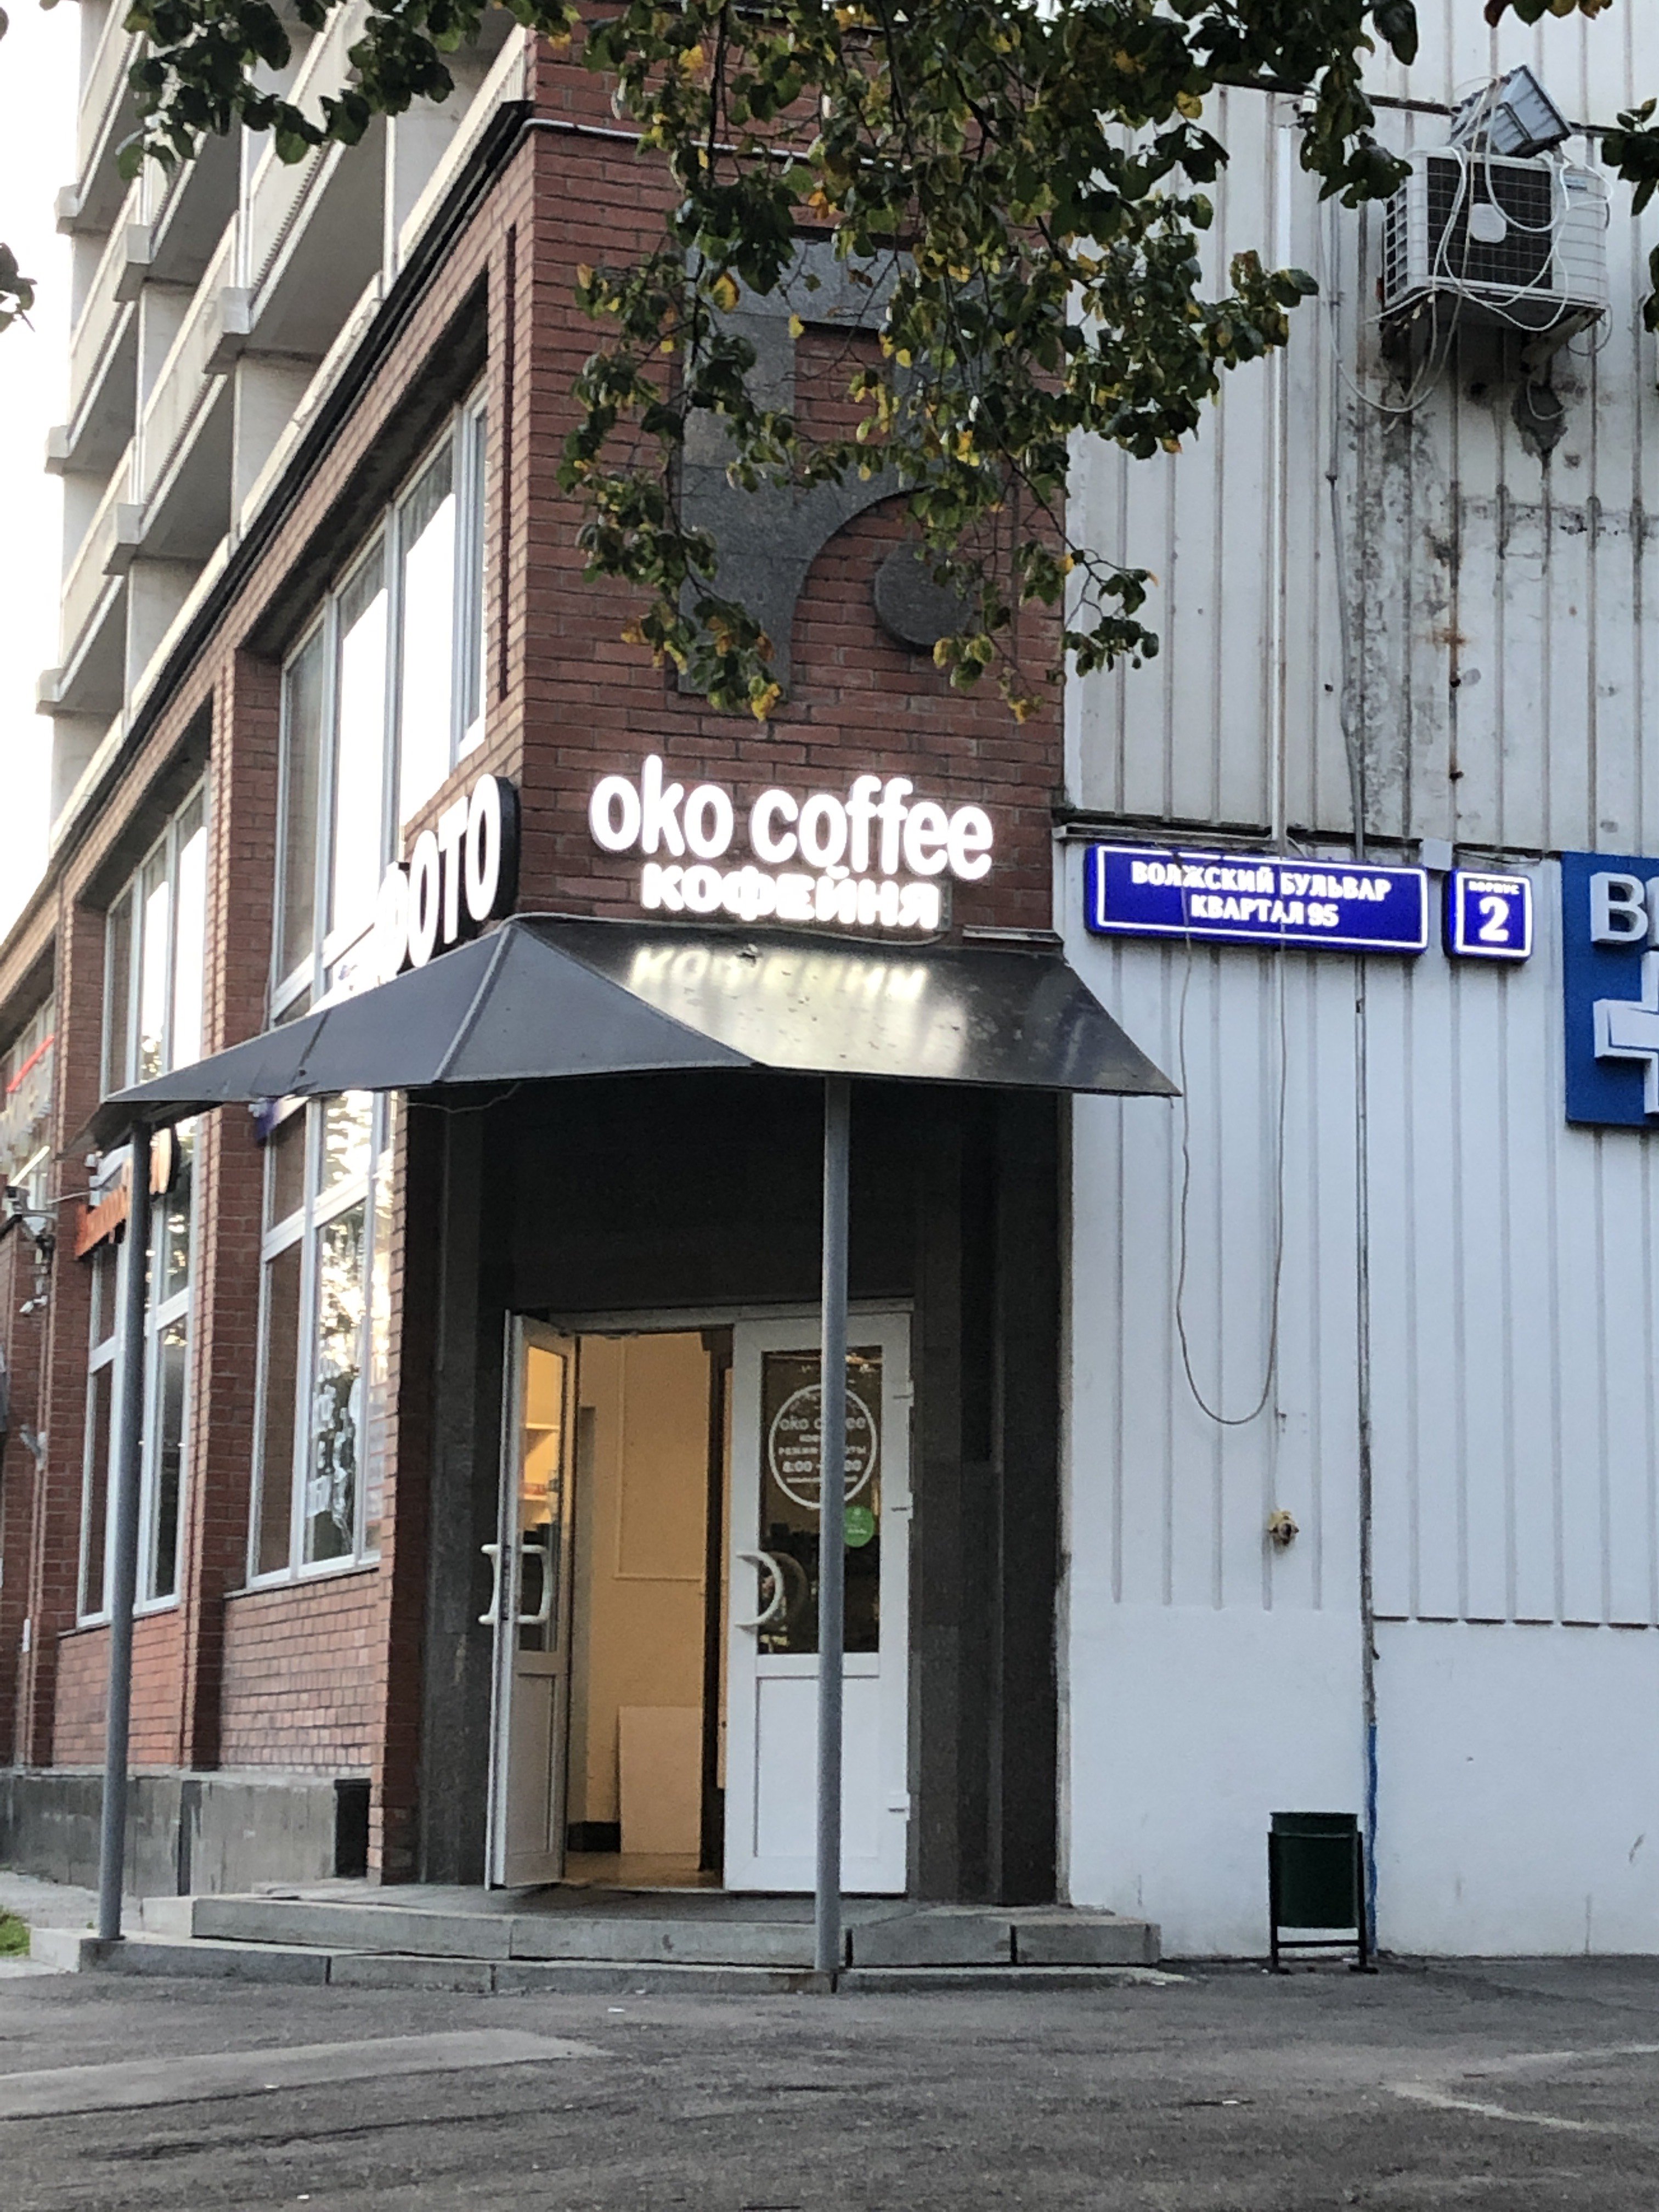 Oko coffee, экспресс-кофейня, Волжский бульвар 95 квартал, к2 (1 этаж)